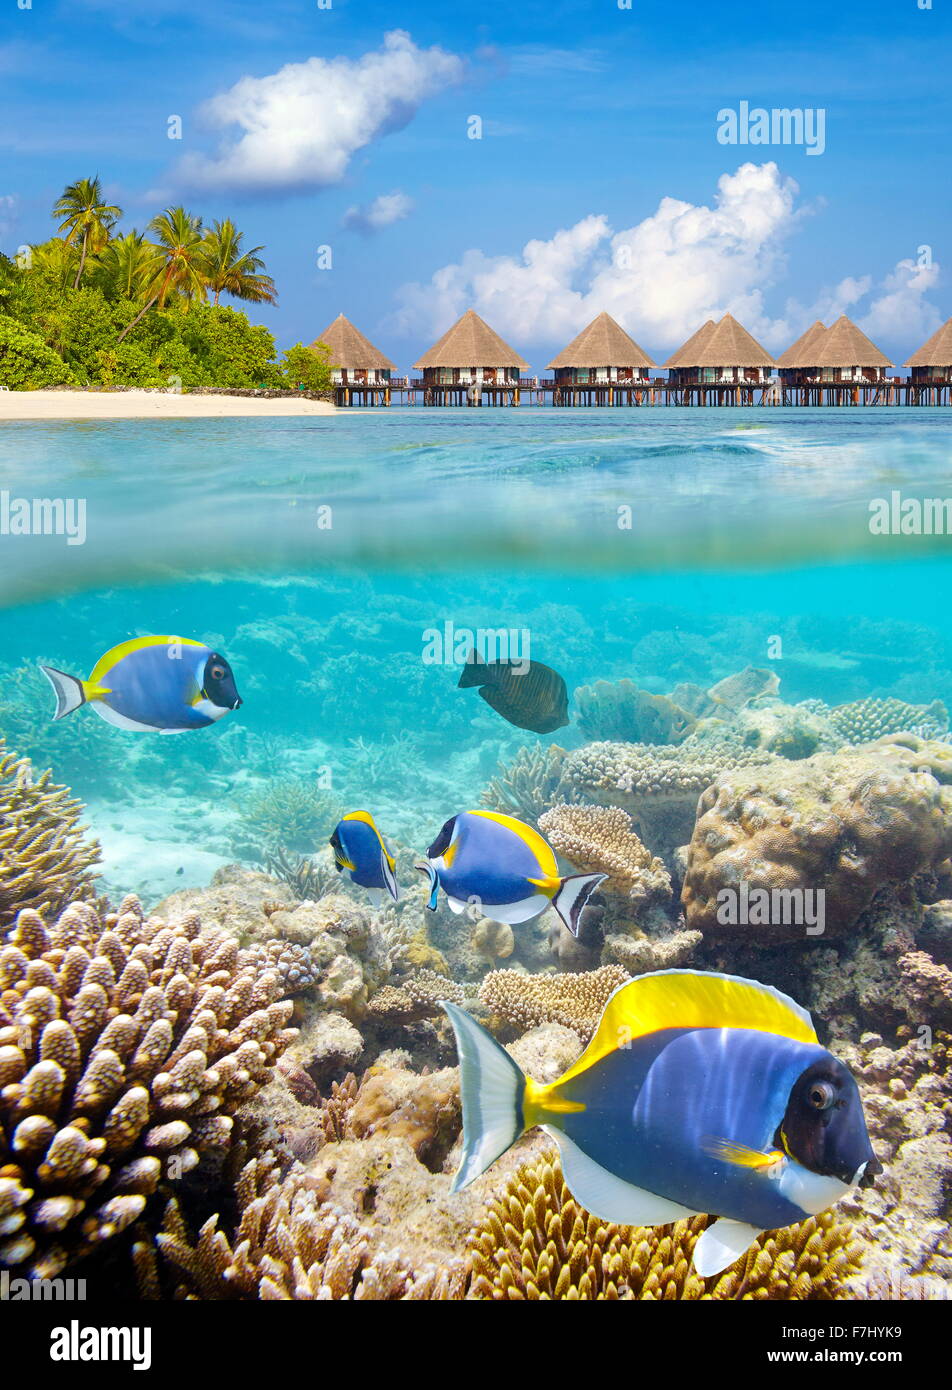 Vista subacquea a pesci tropicali e reef, isole Maldive, atollo di Ari Foto Stock